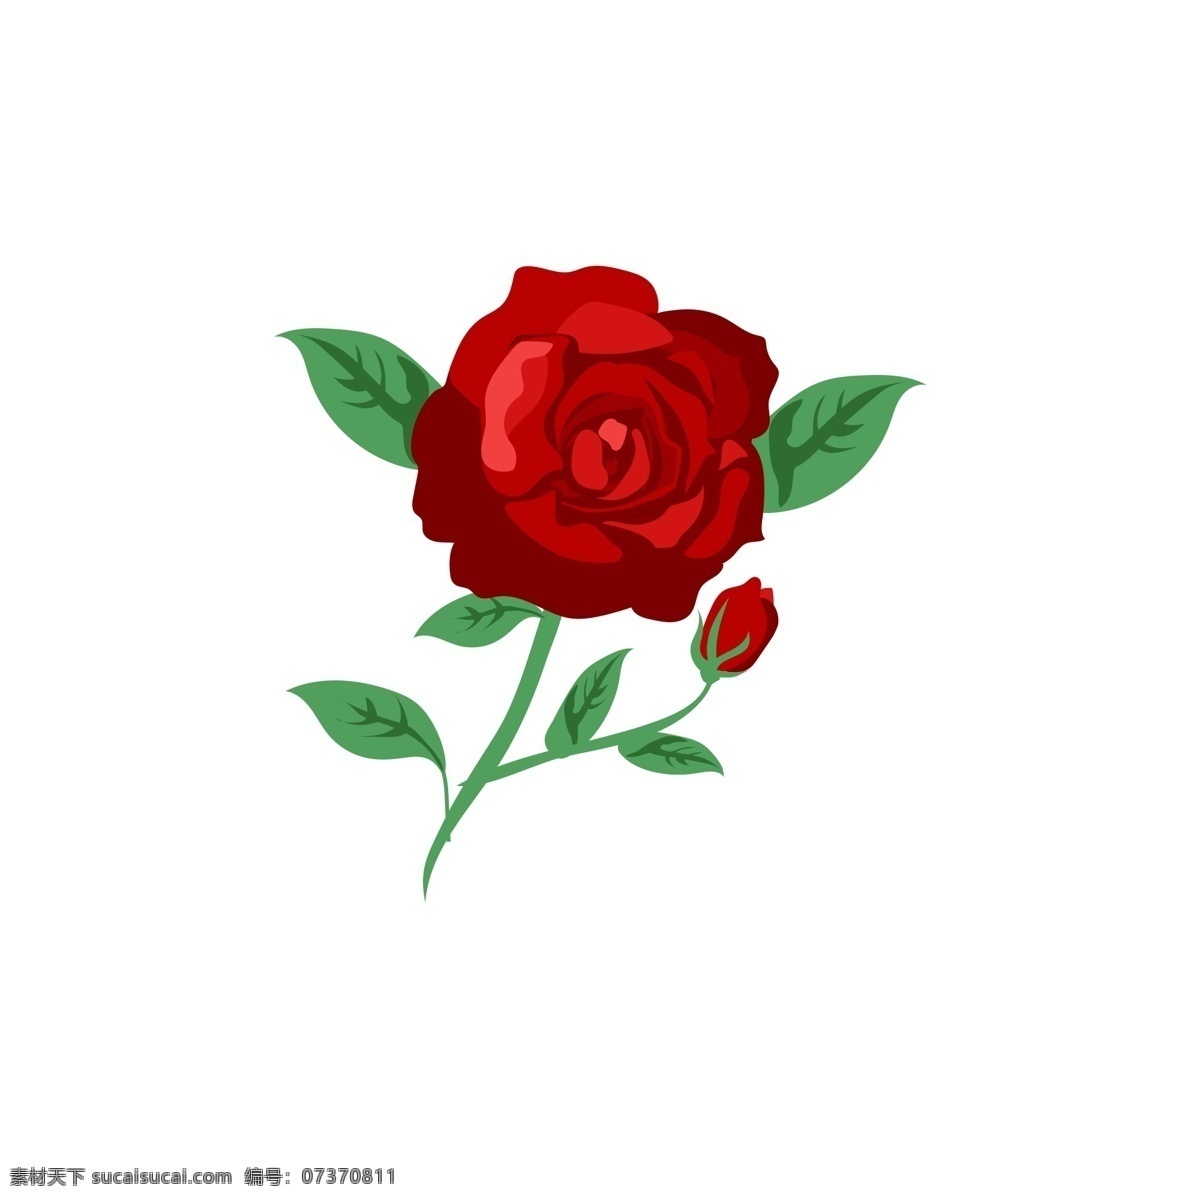 植物 花朵 鲜花 树枝 花香 美丽 景色 红色 玫瑰 花卉 花骨朵 叶子